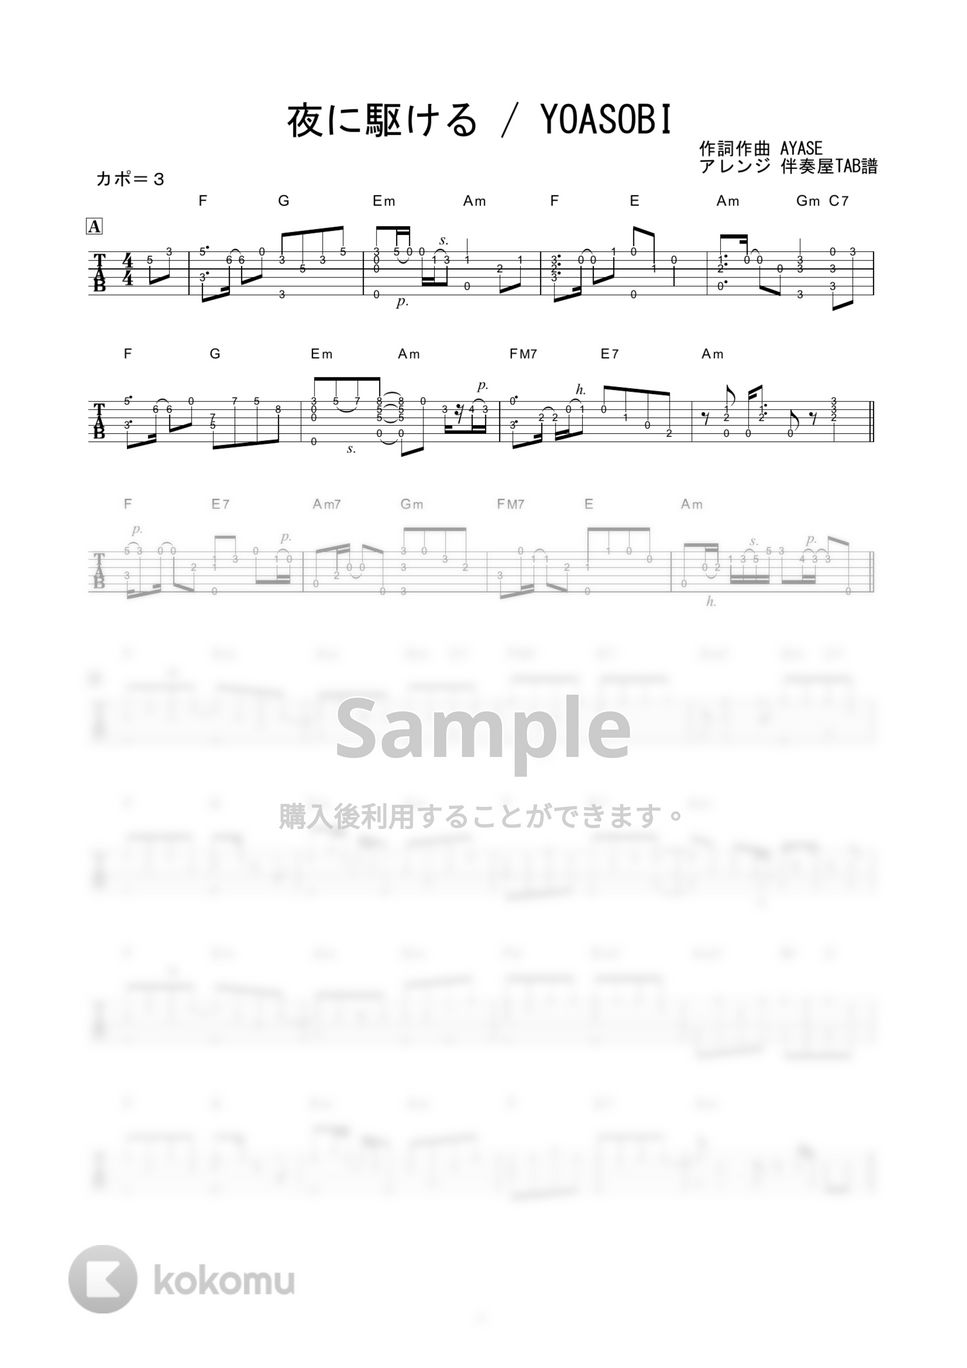 YOASOBI - 夜に駆ける (ソロギター) by 伴奏屋TAB譜